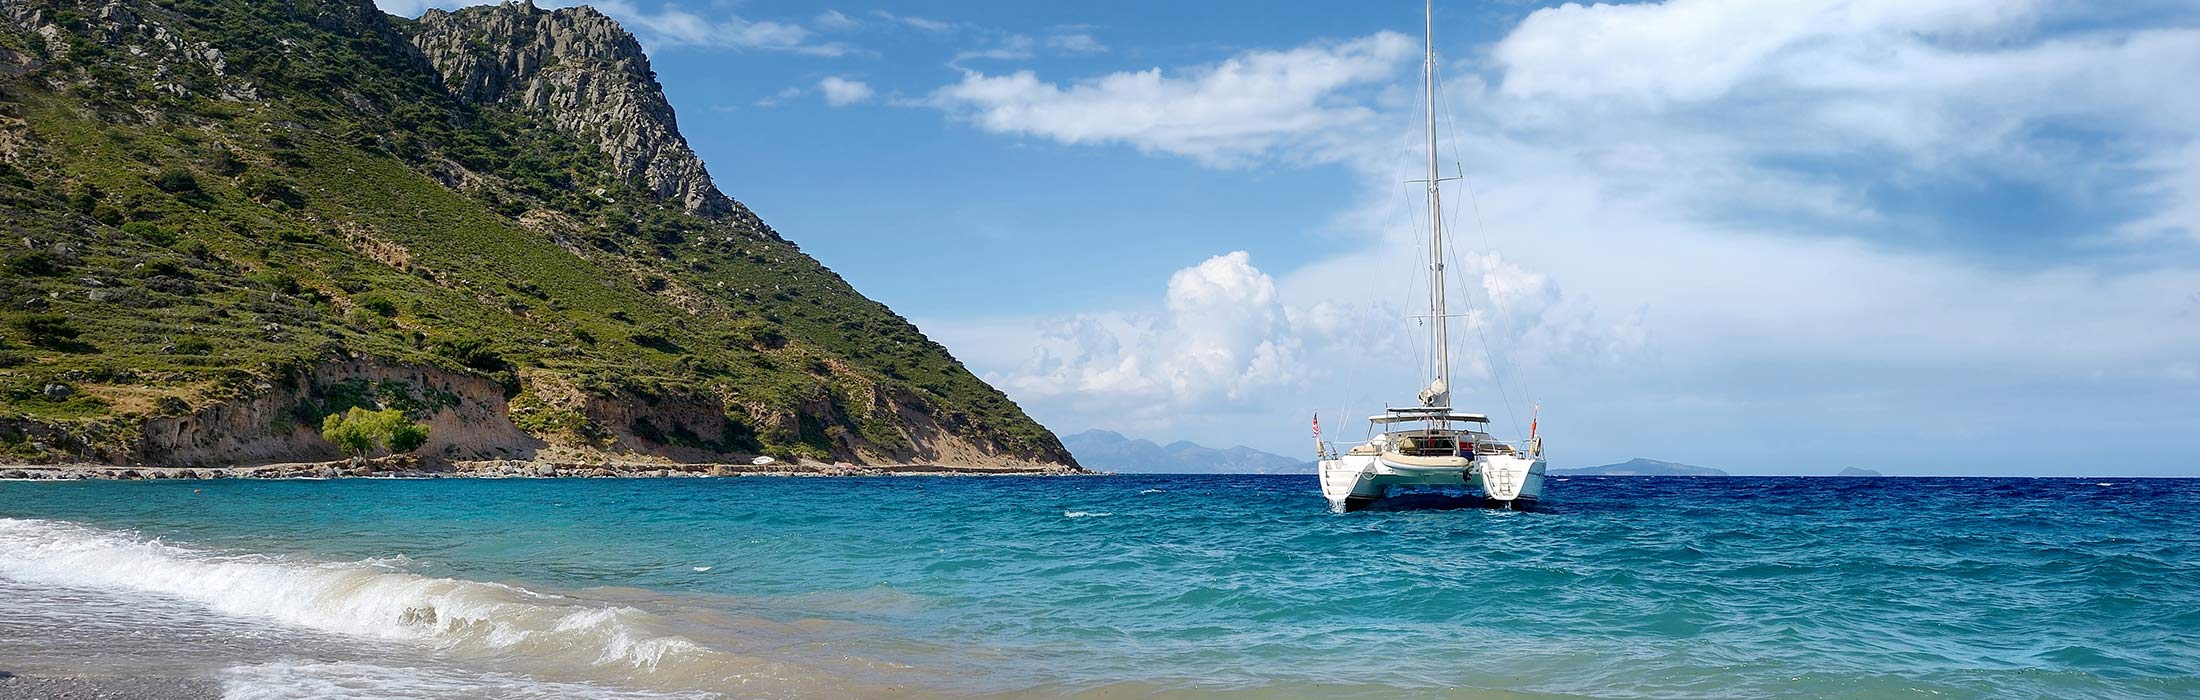 luxury yacht charter destinations mediterranean greece main slider 4